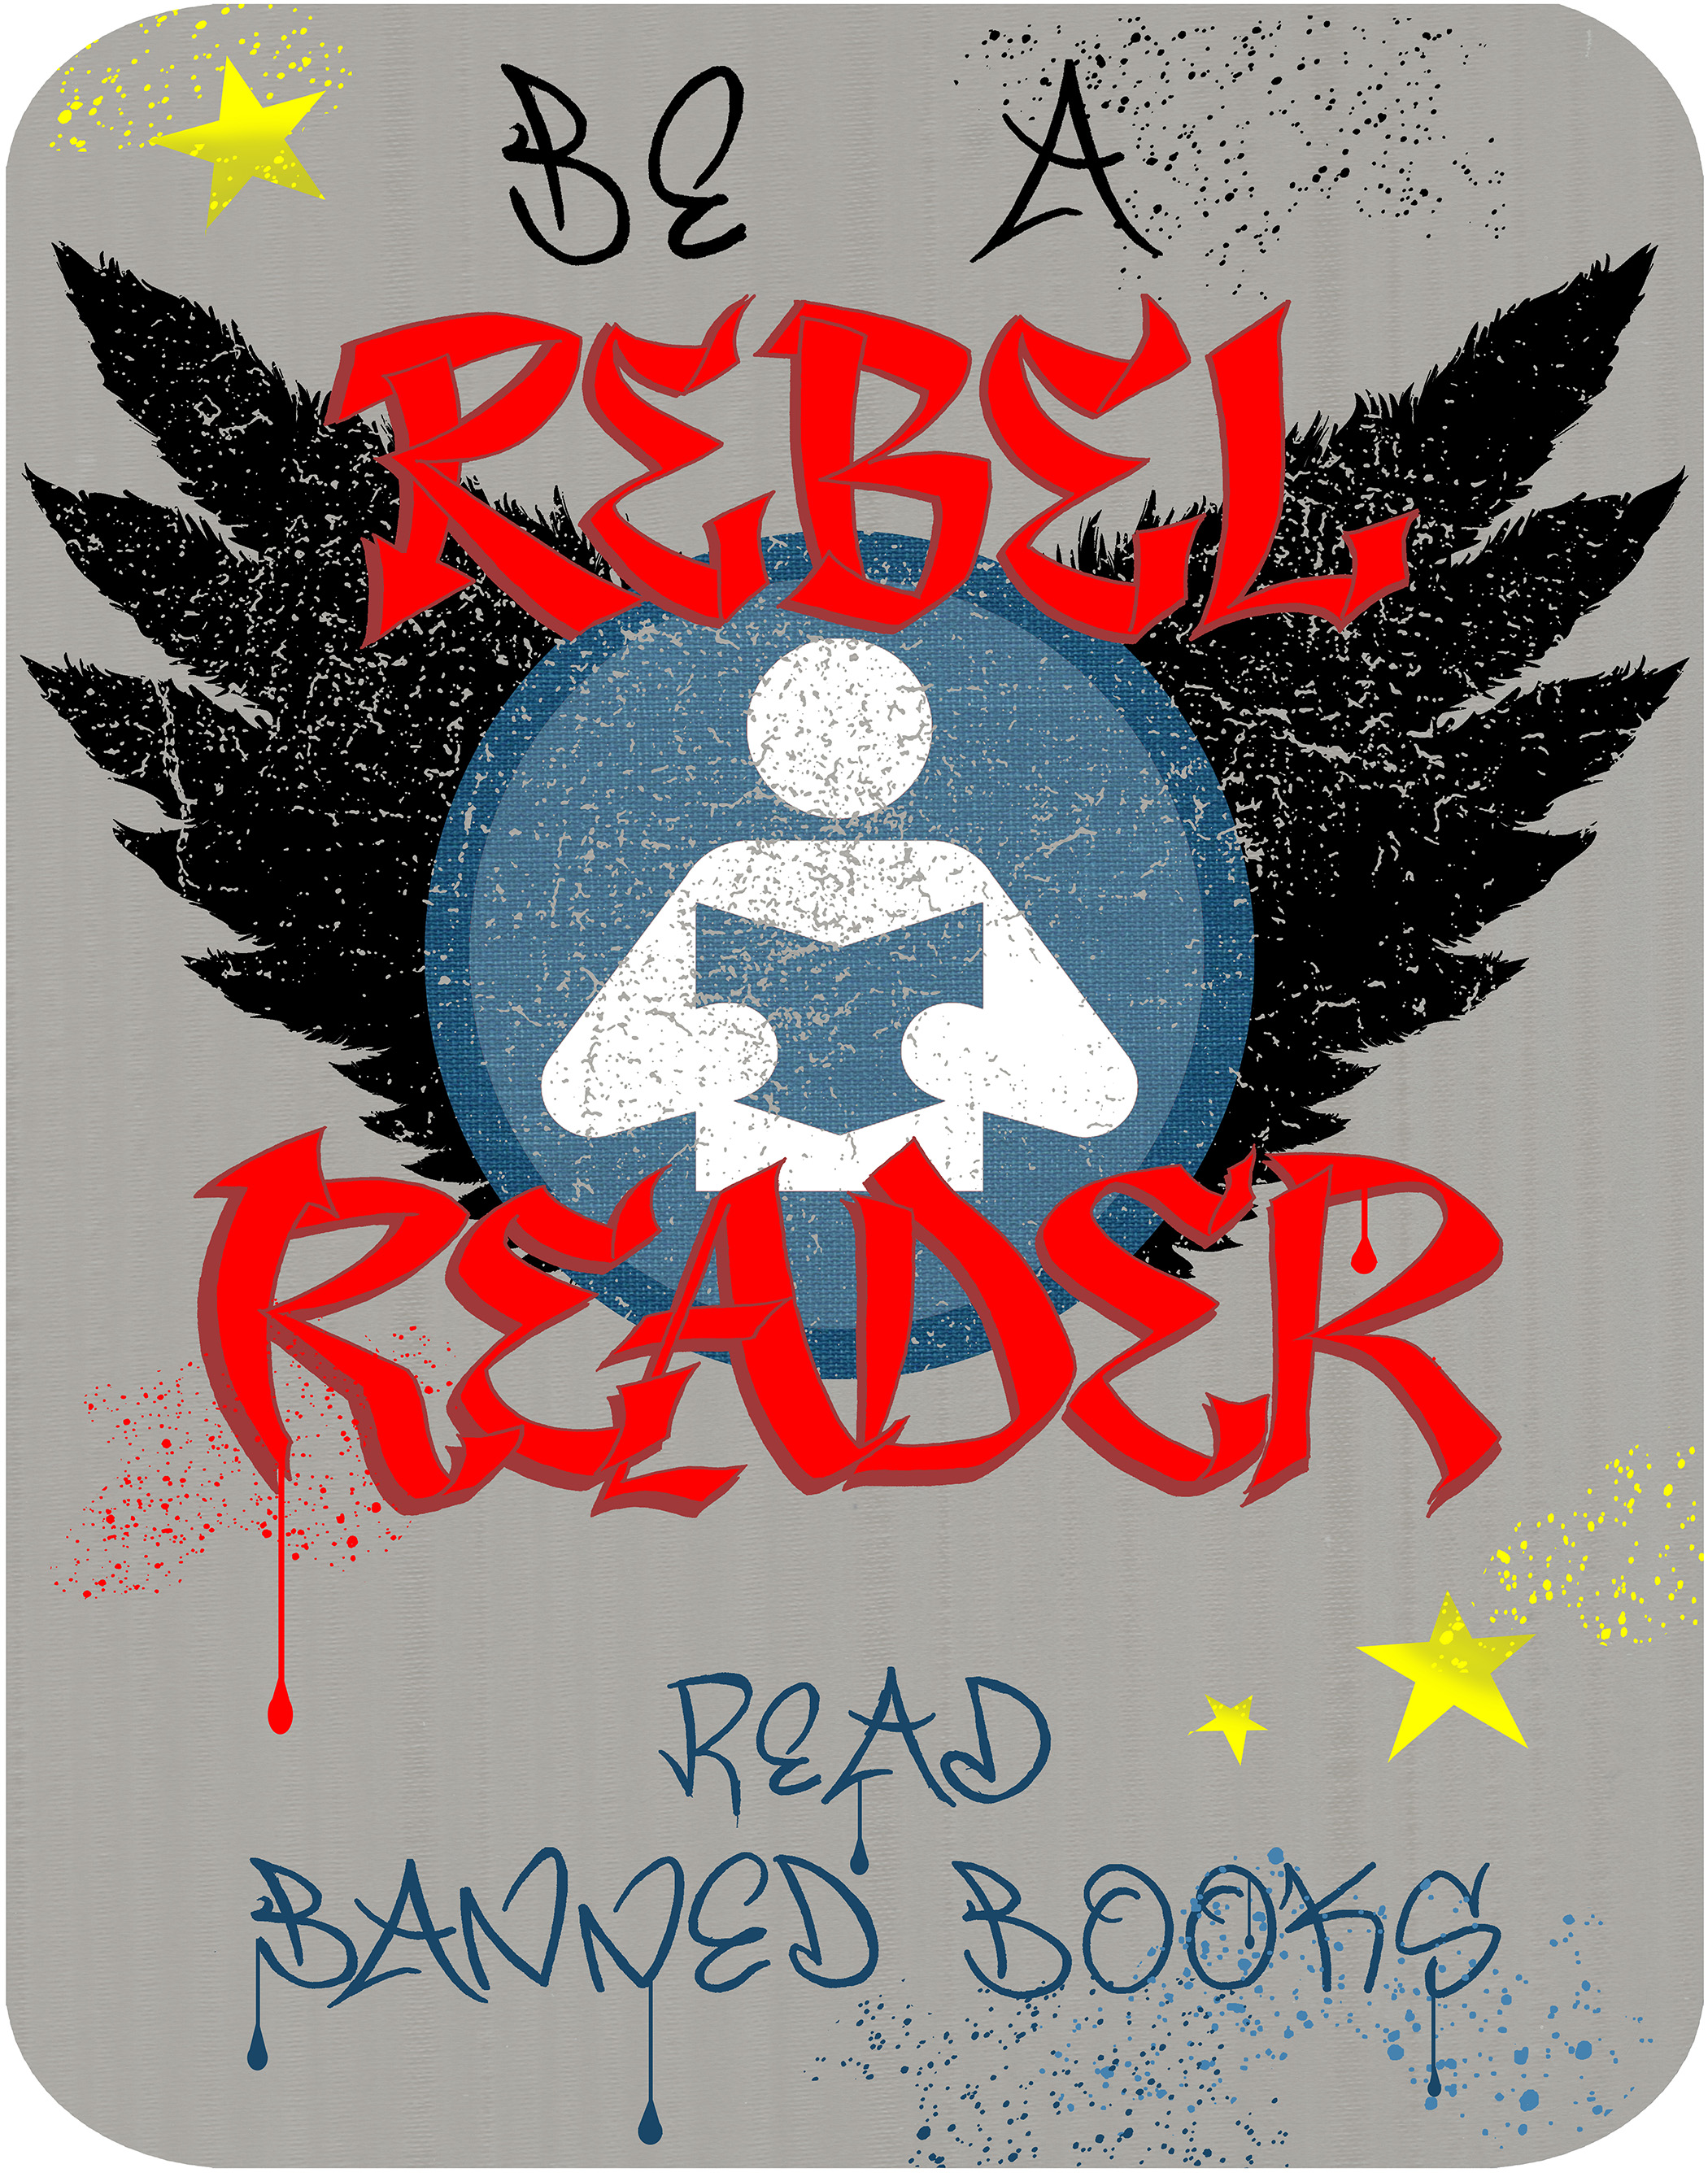 Rebel Reader Banned Books (vertical)